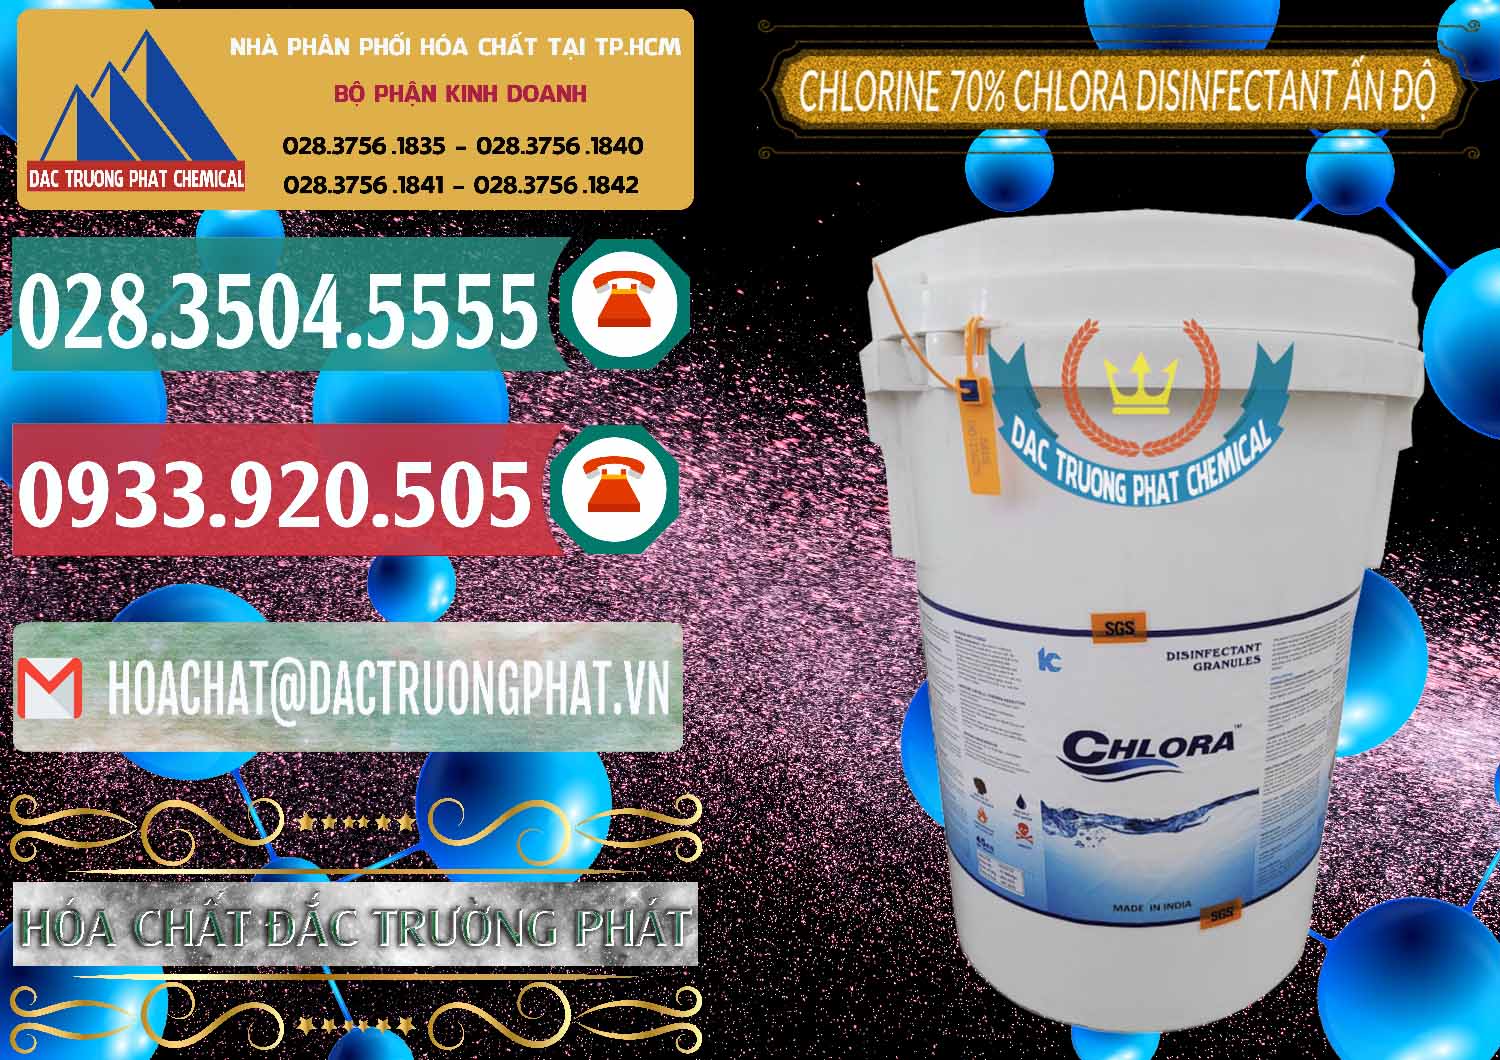 Bán - cung cấp Chlorine – Clorin 70% Chlora Disinfectant Ấn Độ India - 0213 - Cty chuyên nhập khẩu và cung cấp hóa chất tại TP.HCM - muabanhoachat.vn